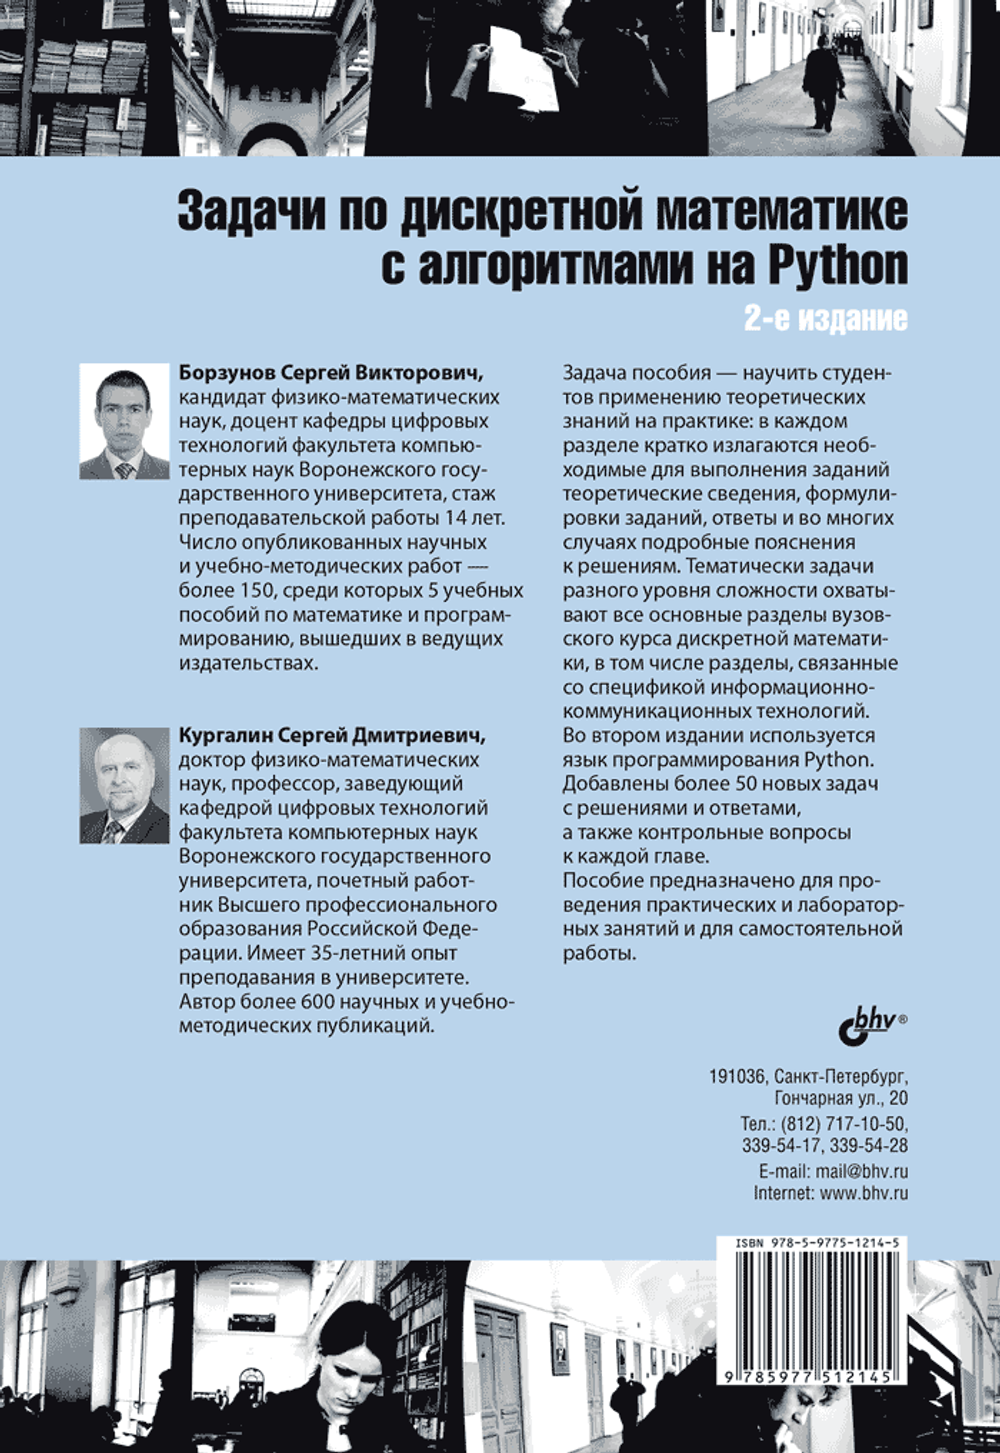 Книга: Борзунов С.В., Кургалин С.Д. "Задачи по дискретной математике с алгоритмами на Python. 2-е изд."